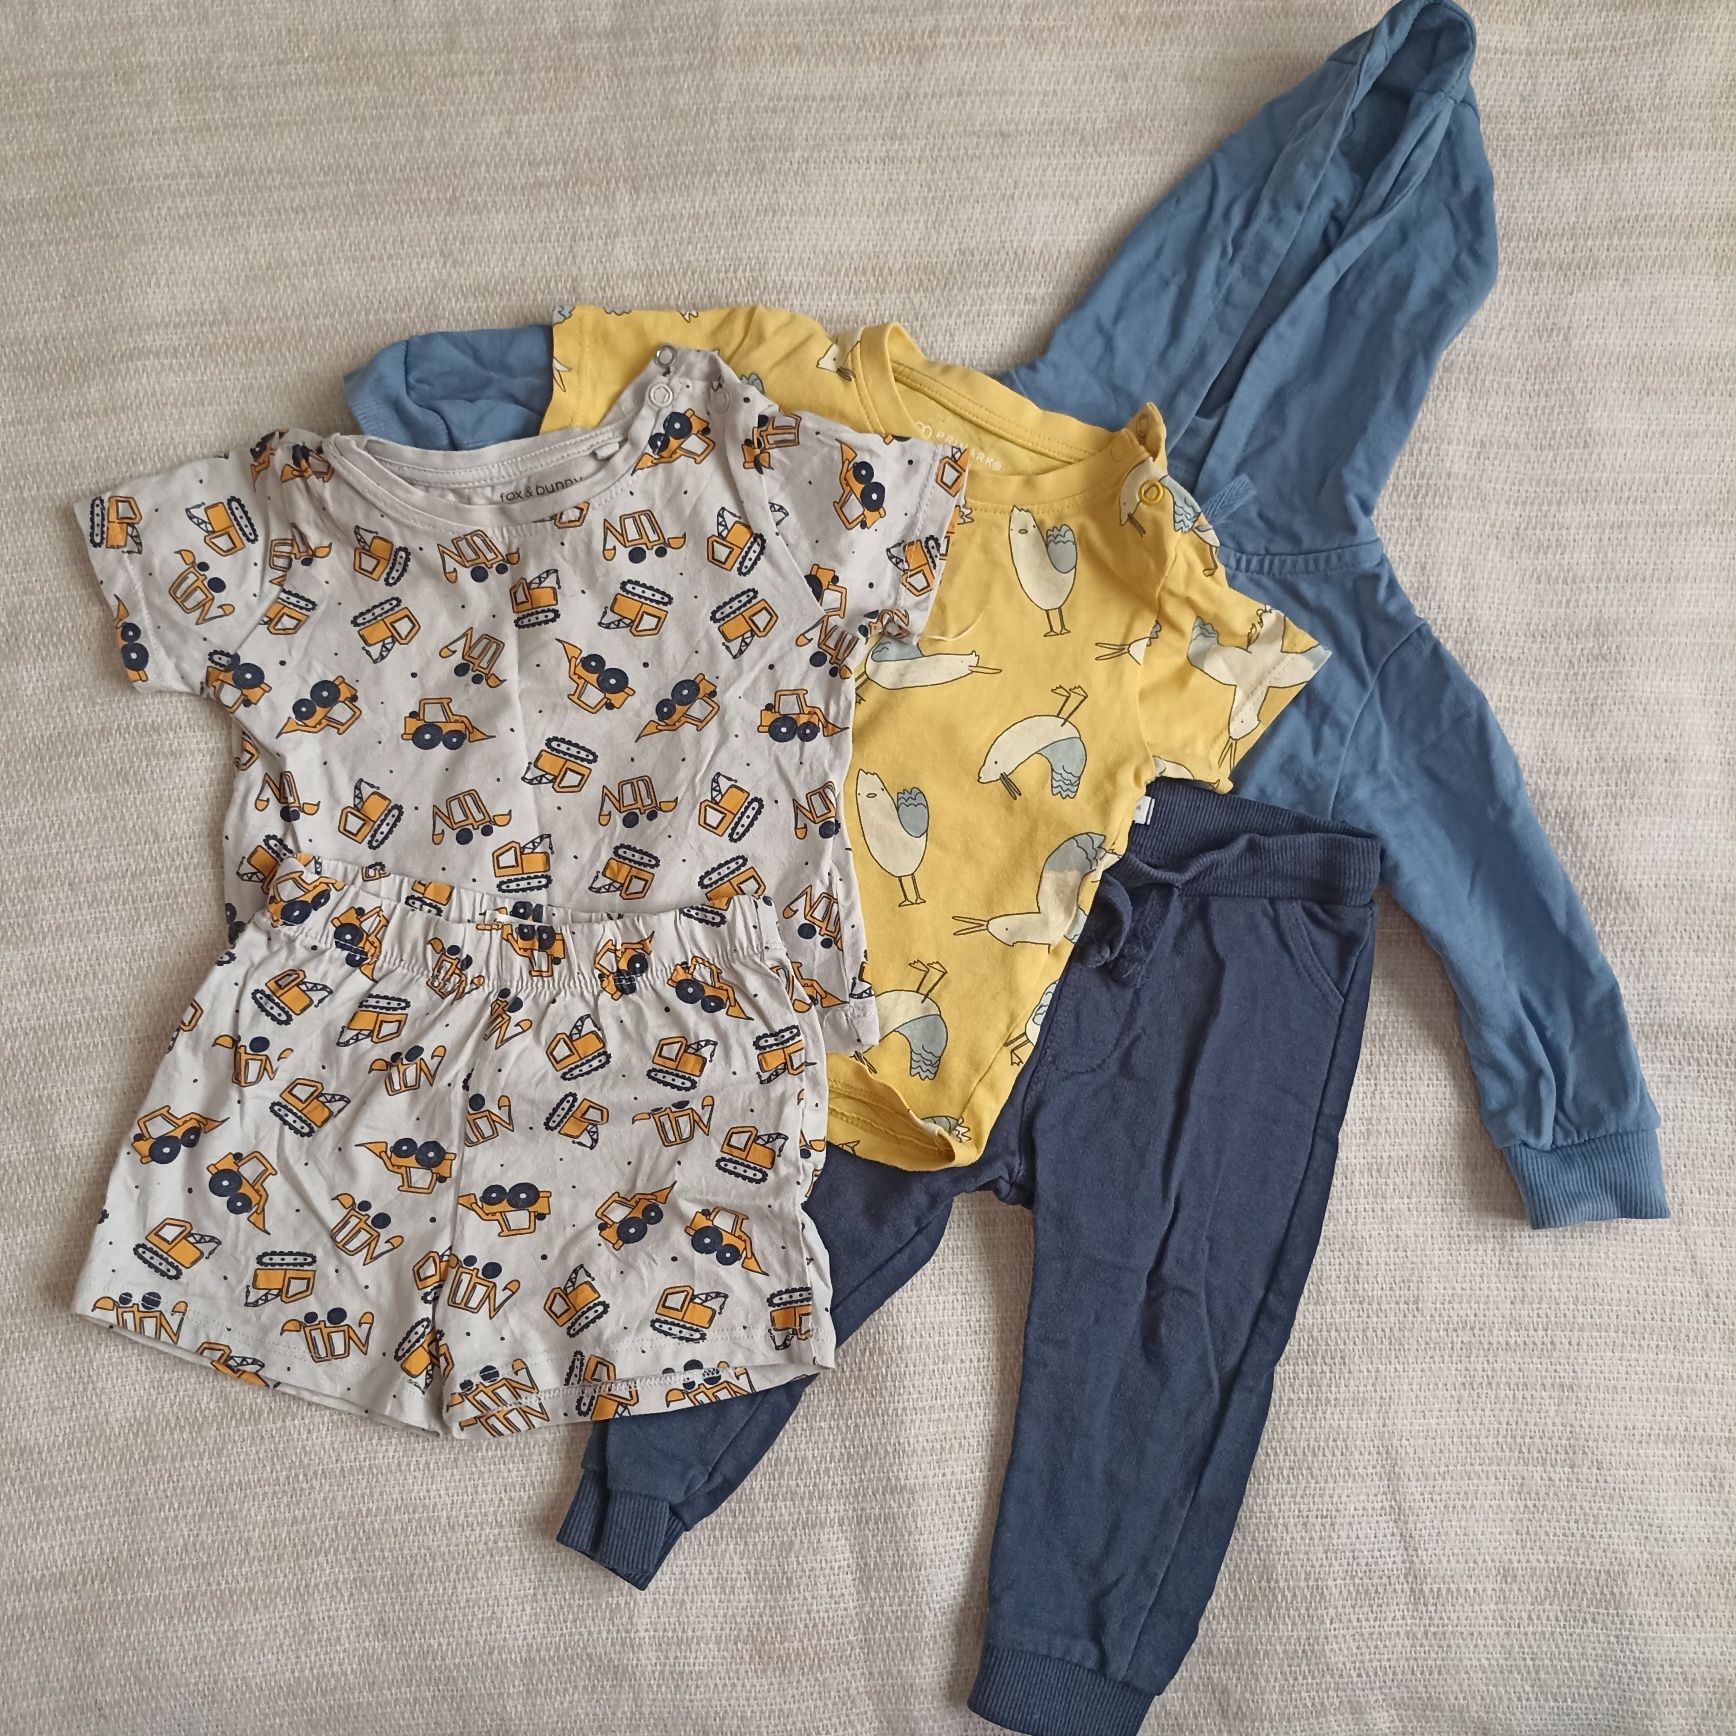 Ubranka dla chłopca koszulki bluza spodnie pieski niebieskie beżowe